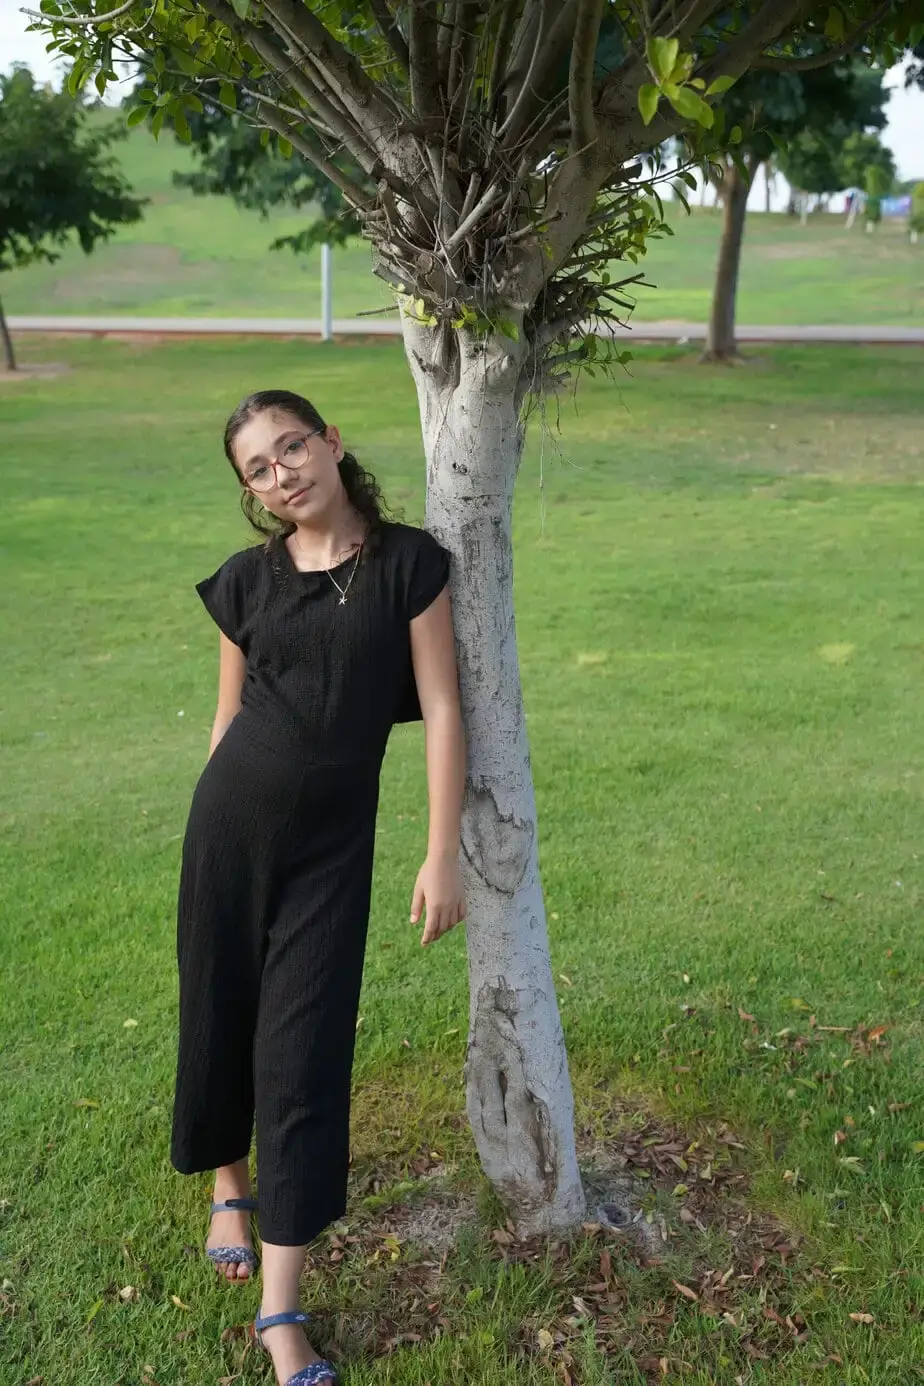 ילדת בת מצווה מצטלמת ליד עץ בשביל בוק בת מצווה בטבע. תחת קטגוריית צלם לבת מצווה של מגנטסטאר צילום אירועים